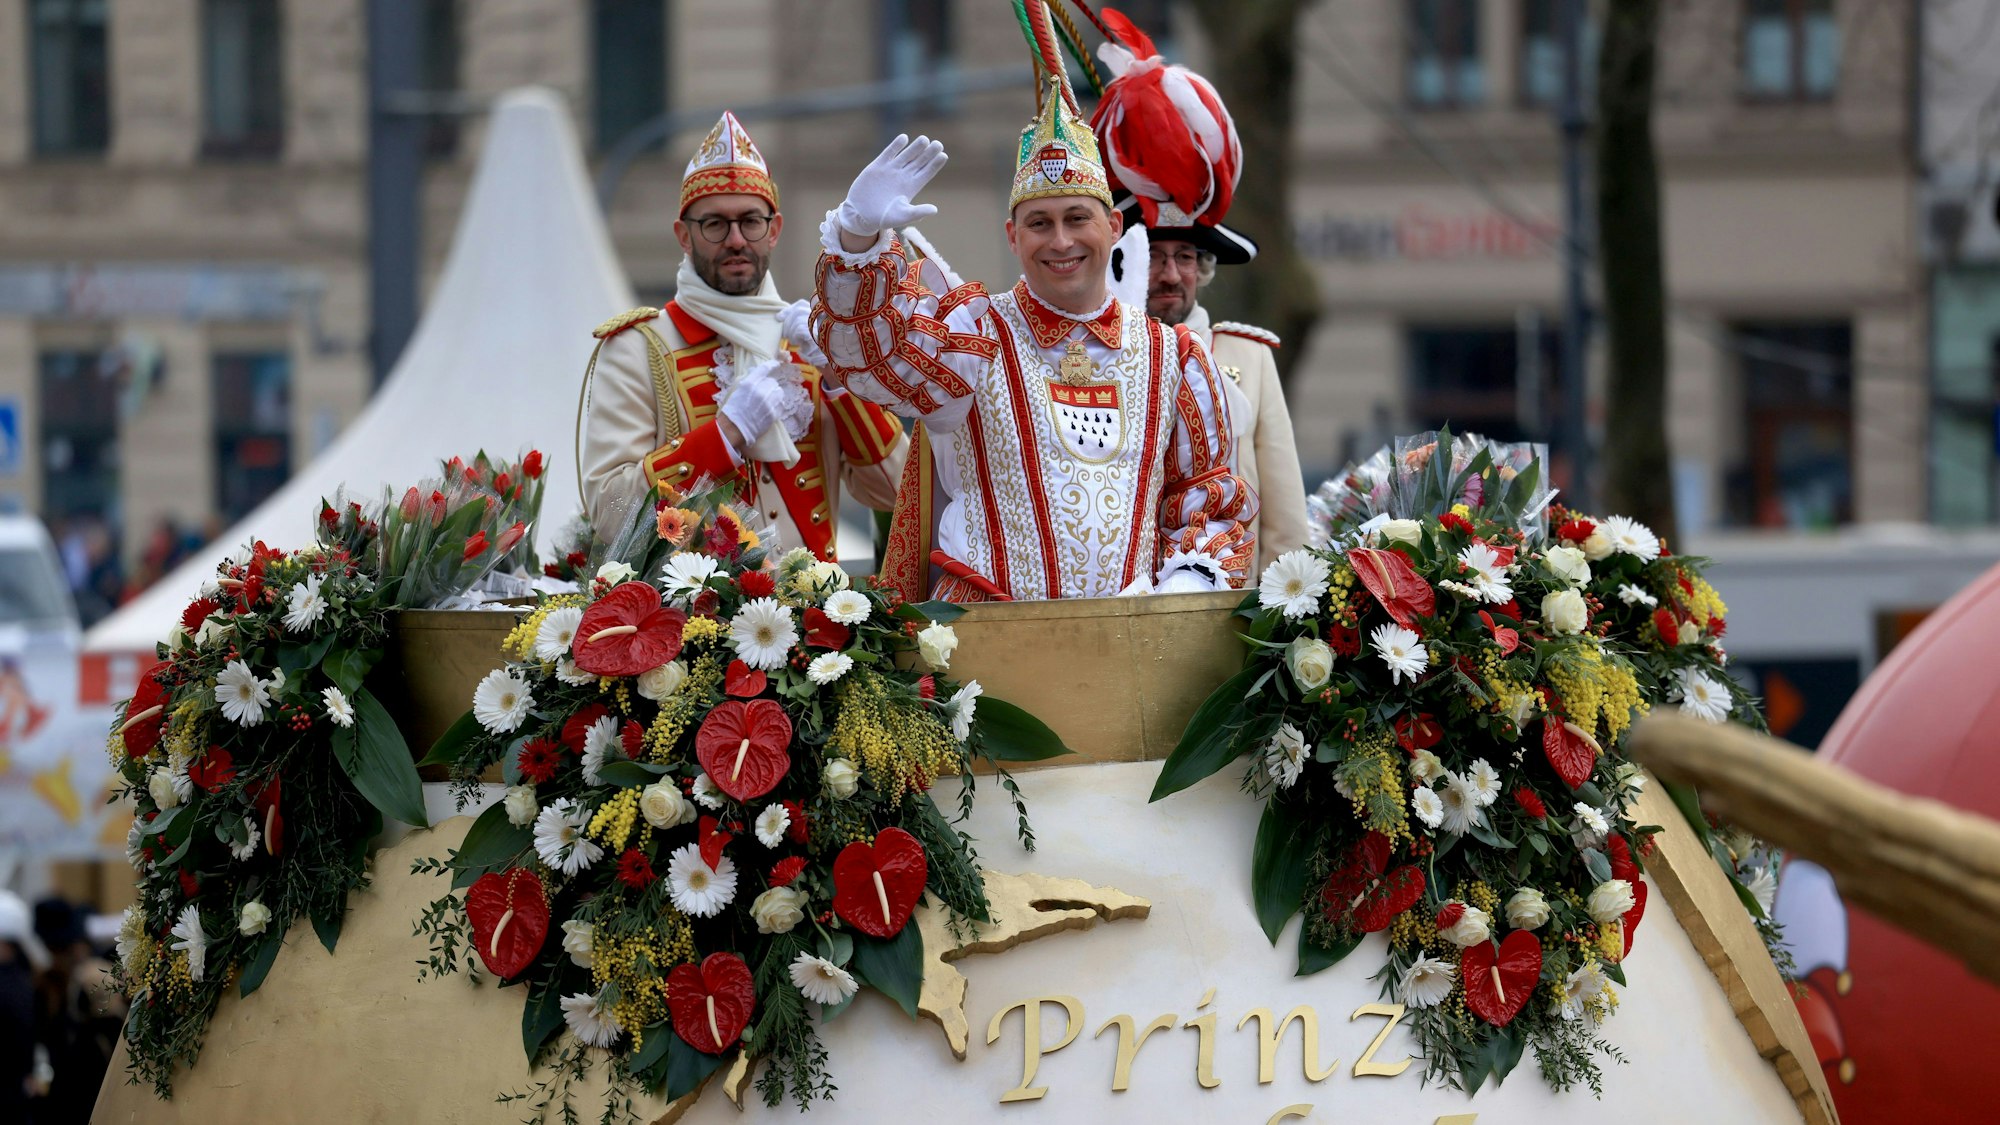 Höhenpunkt des Kölner Karnevals und Höhepunkt seiner Regentschaft: Prinz Karneval Sascha I. (Sascha Klupsch) fährt in seinem Prunkwagen auf die Strecke des Rosenmontagsumzugs.